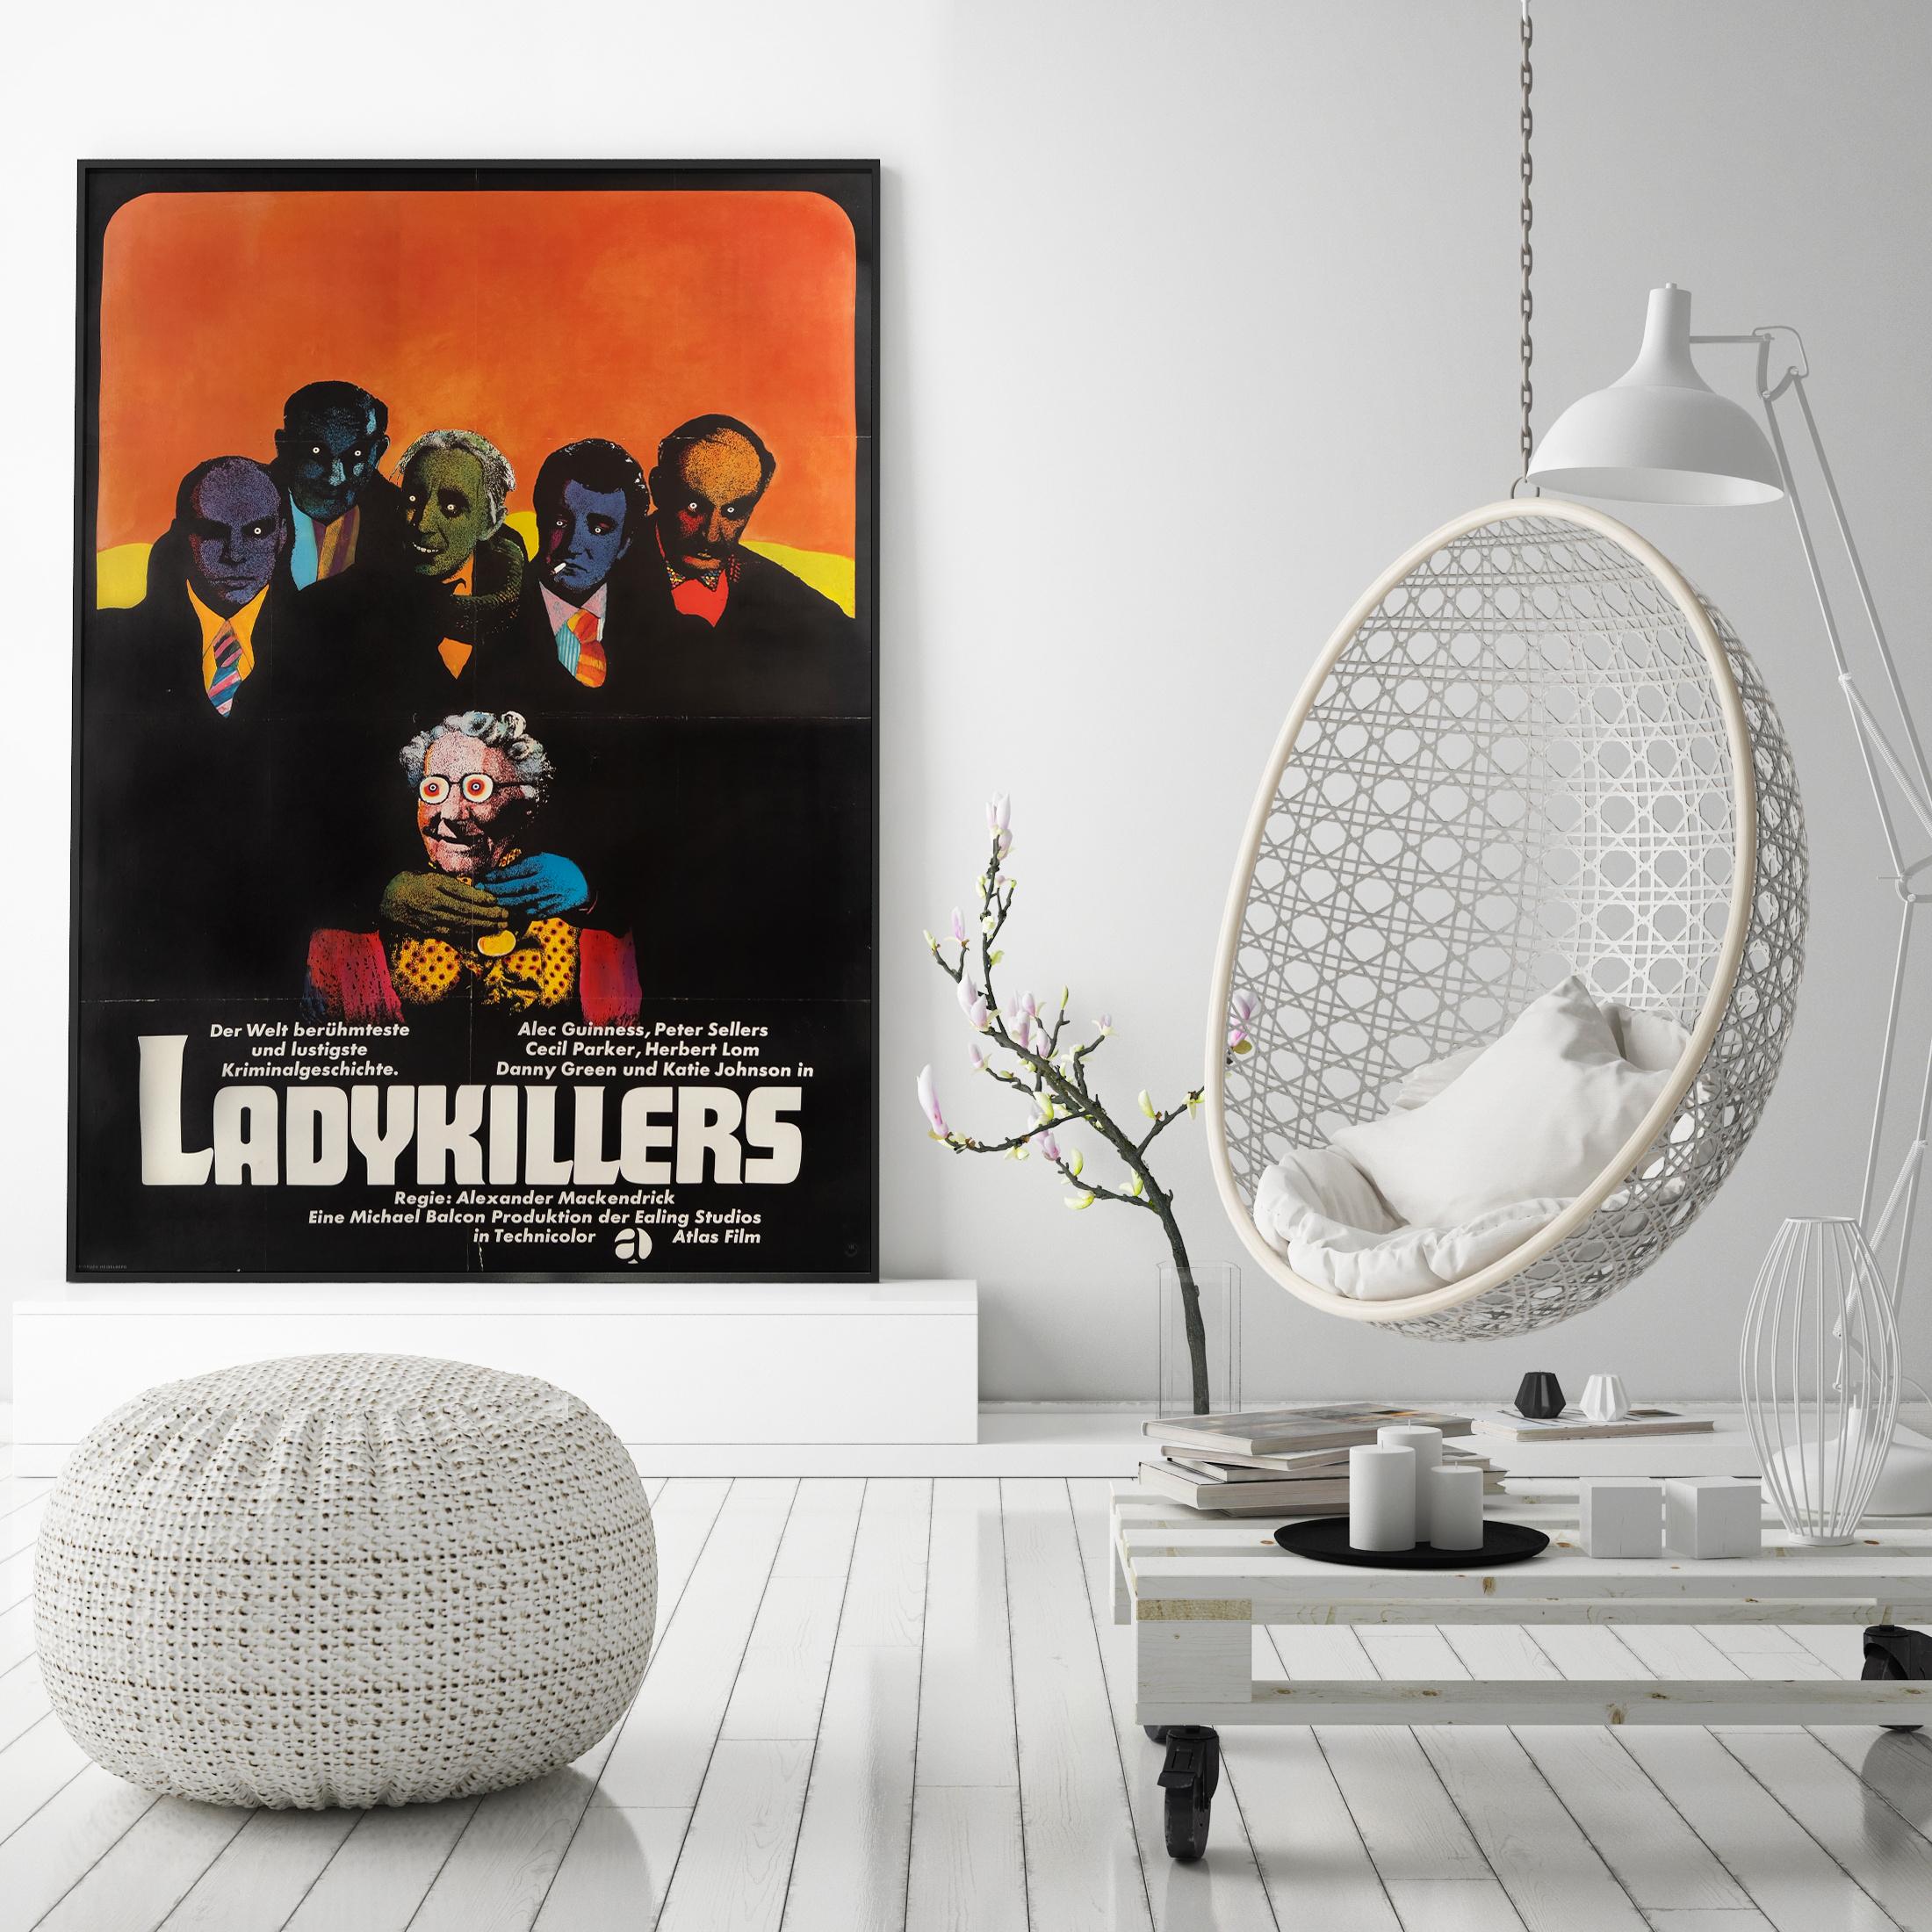 Wir lieben Heinz Edelmanns düster-humorvolles und wunderbar psychedelisches Design, das auf der Neuauflage des Ealing-Klassikers The Ladykillers aus den 60er Jahren zu sehen ist. Der unverwechselbare Stil von Edelmann kommt bei diesem Entwurf